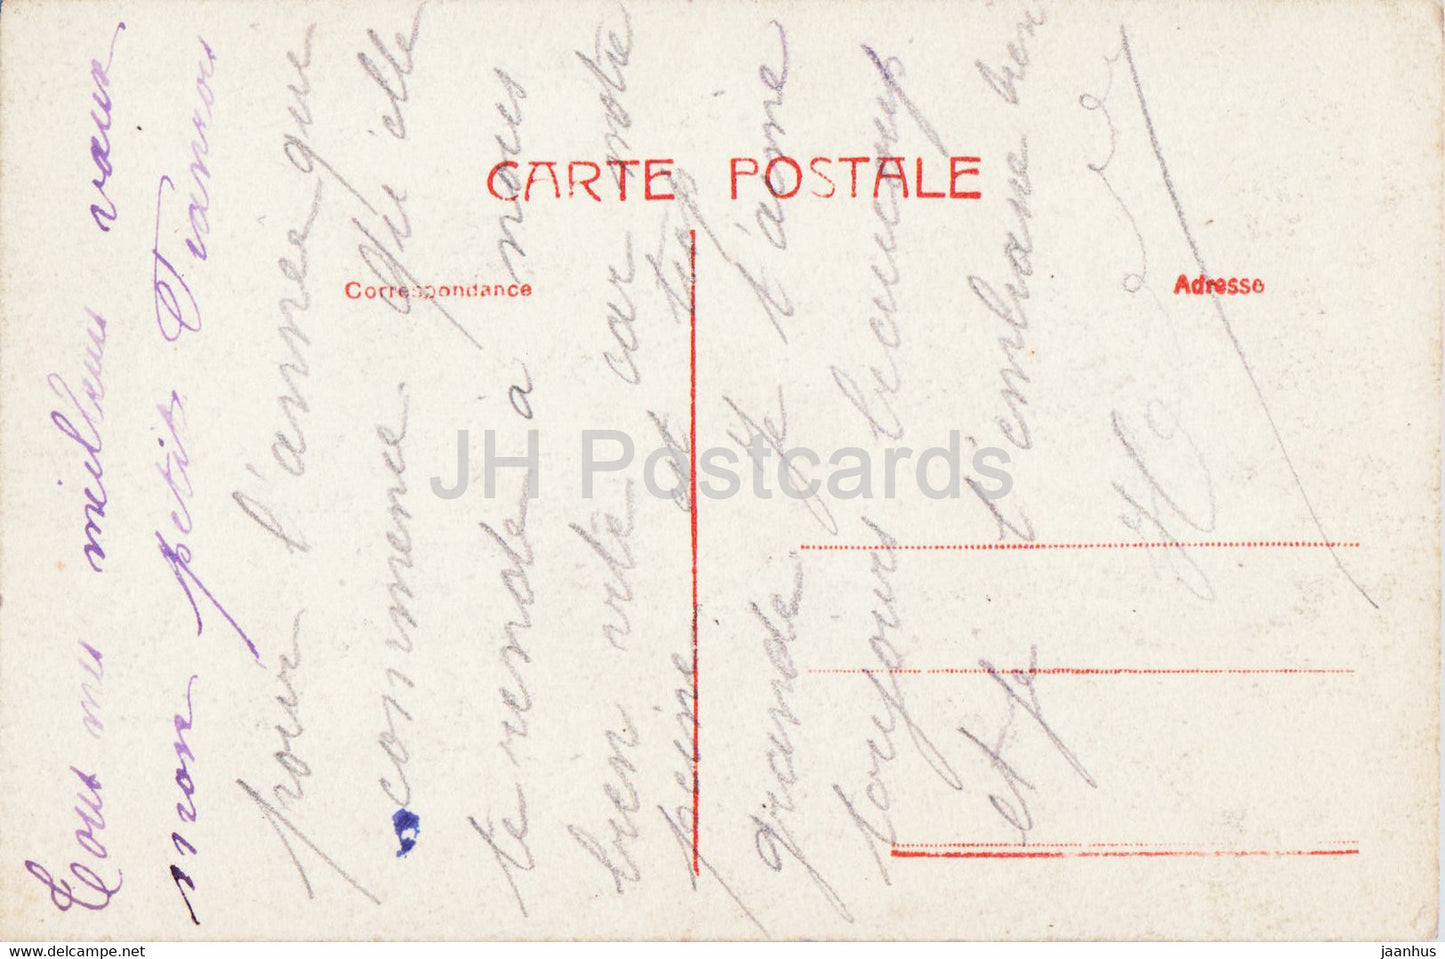 Carte de voeux du Nouvel An - Bonne Annee - femme - fleurs - carte postale ancienne - 1918 - France - occasion